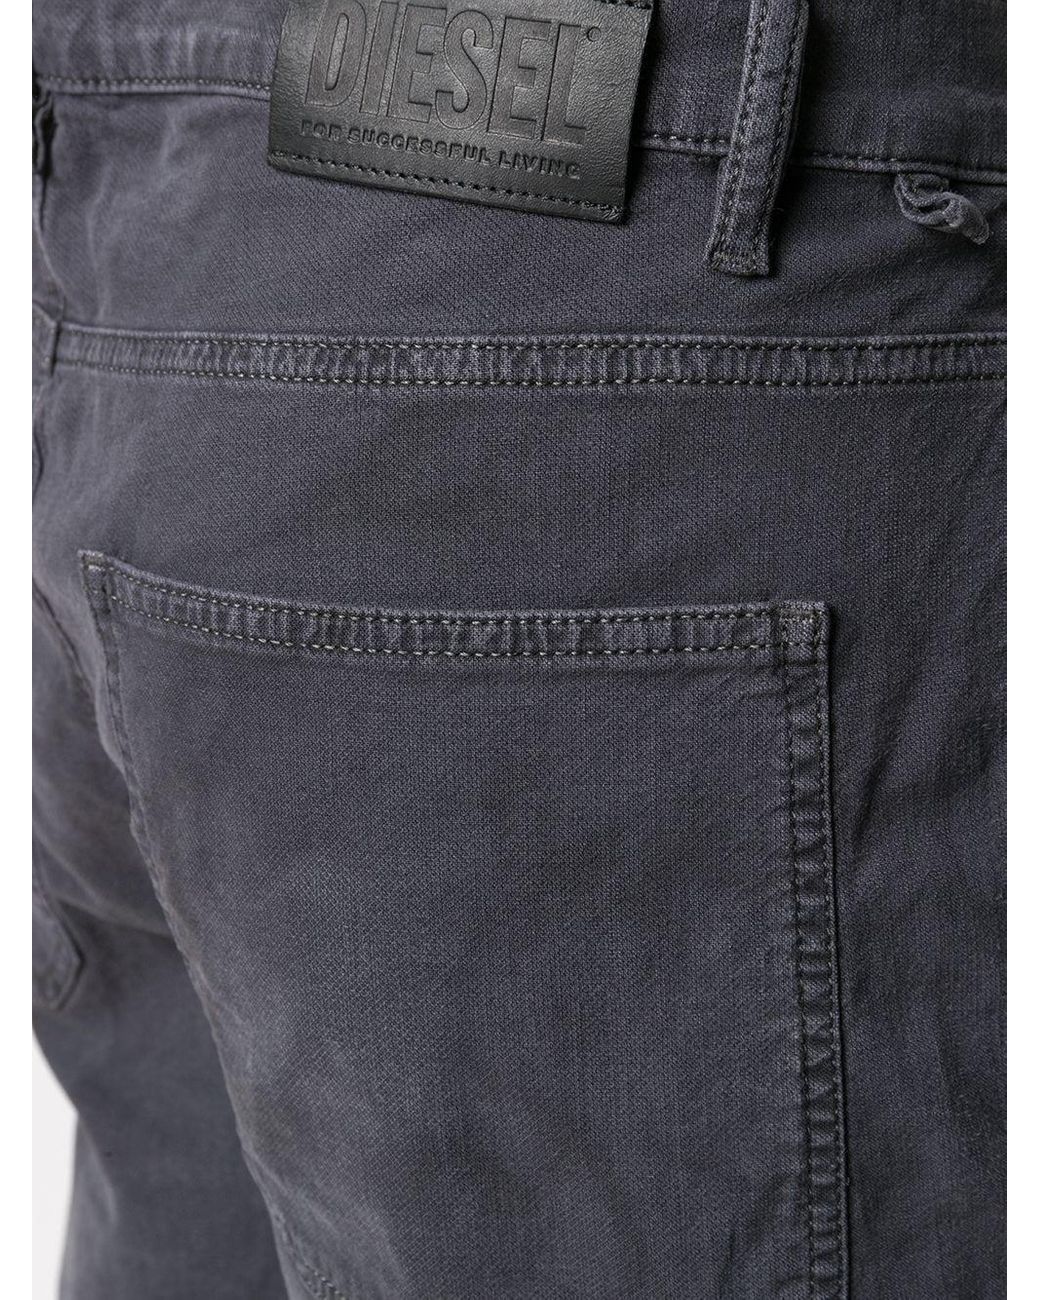 DIESEL D-krett Jogg Straight Jeans in Gray for Men | Lyst